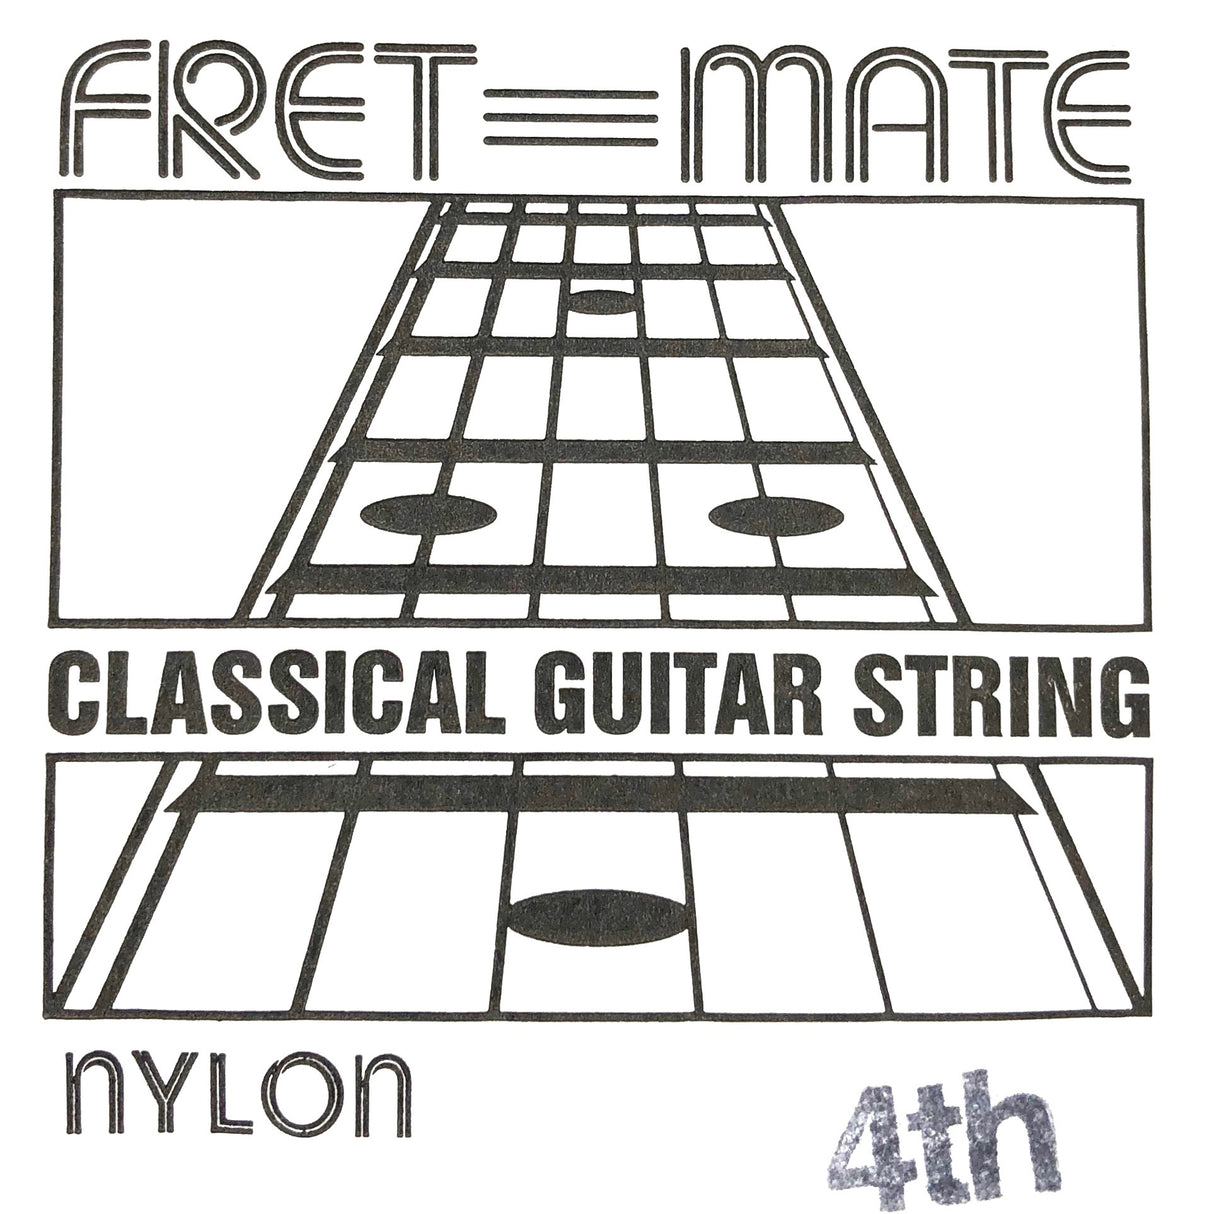 Fret Mate Einzelsaiten Nylon für Konzertgitarre verschiedene Stärken - Musik-Ebert Gmbh